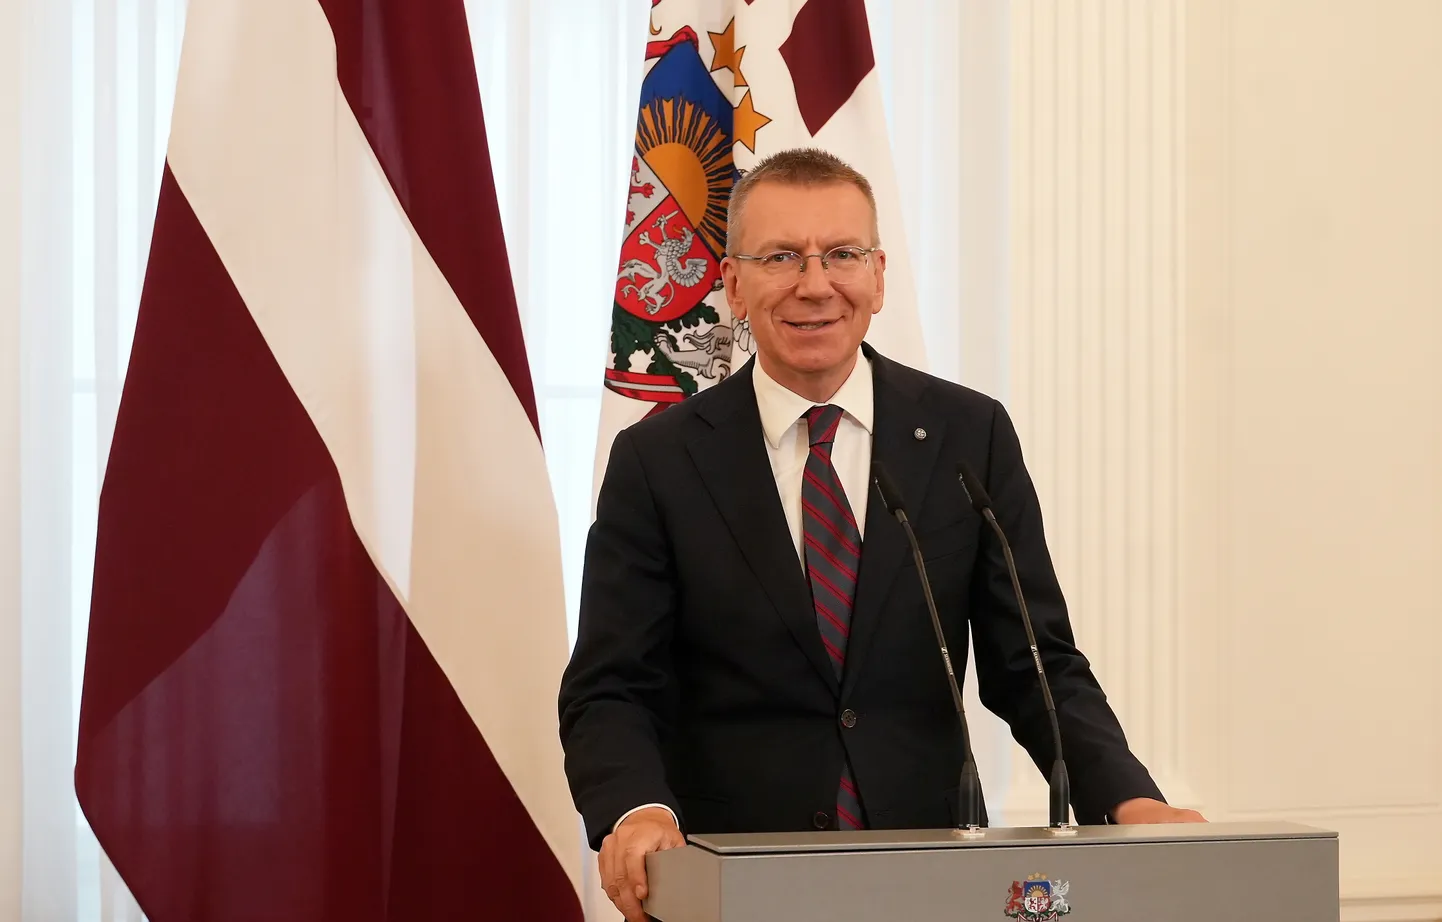 Valsts prezidents Edgars Rinkēvičs uzrunā Latvijas goda konsulus ārvalstīs pieņemšanā Rigas pilī.